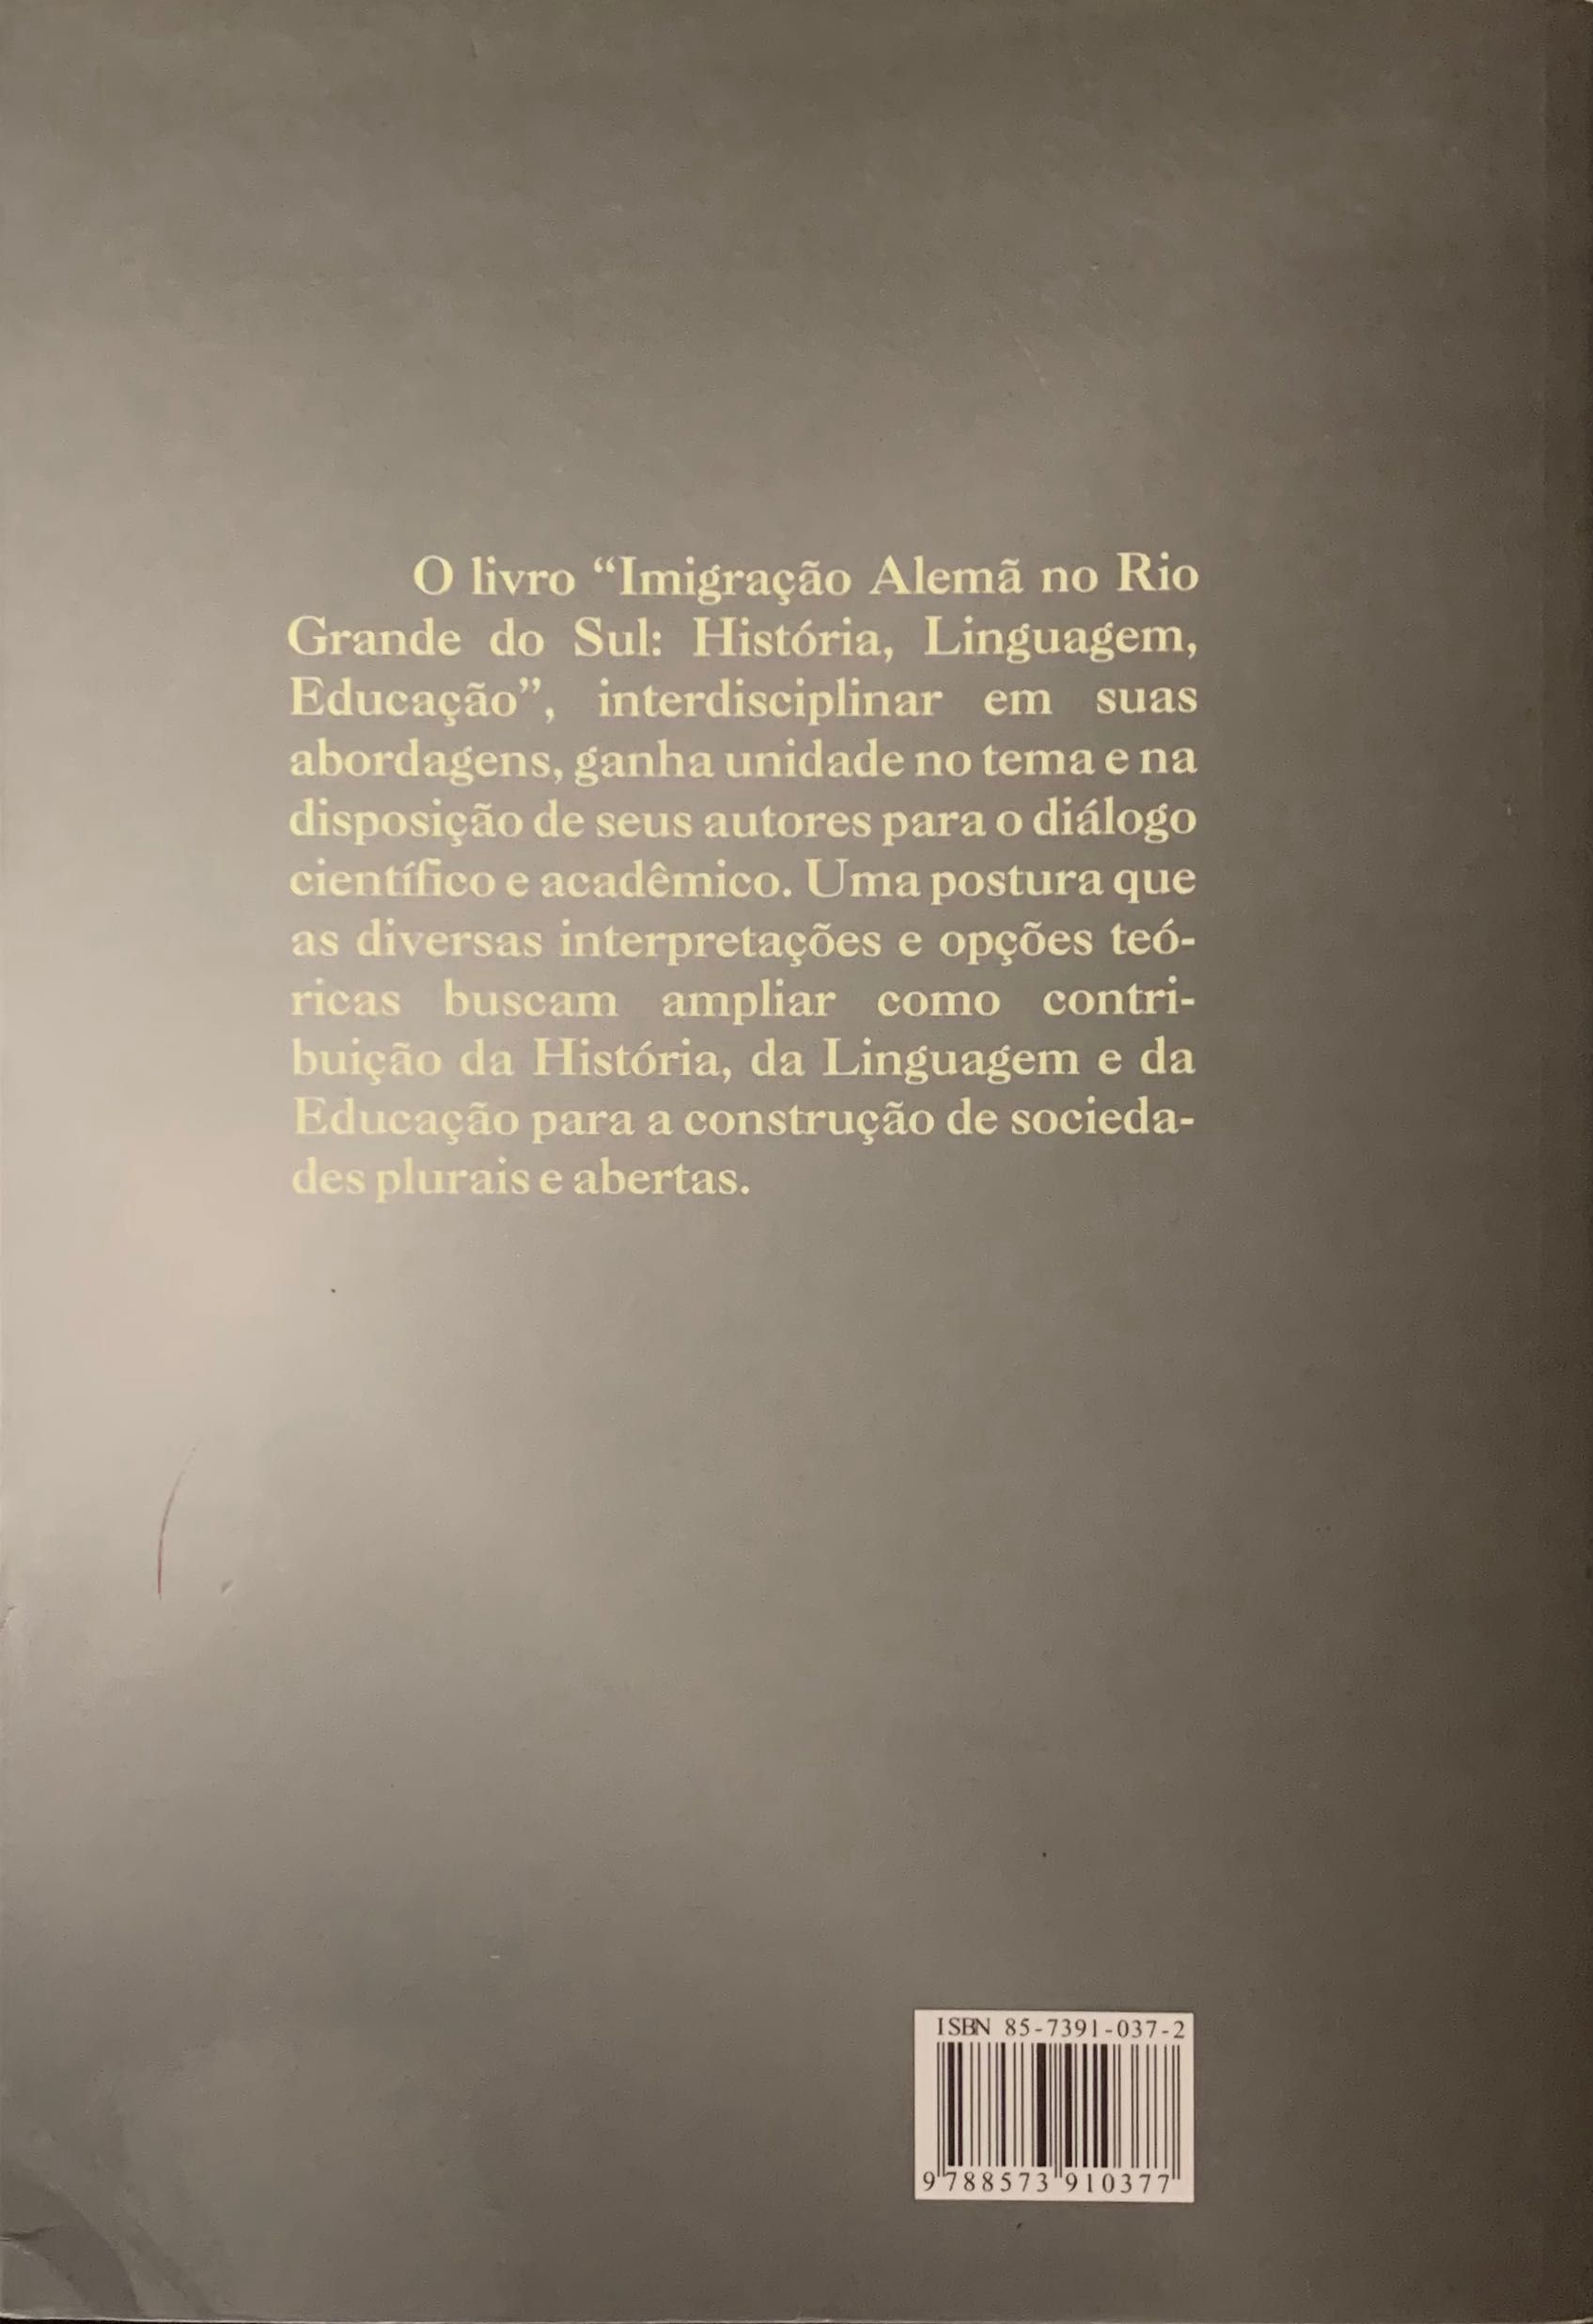 [Livro] Imigração alemã no Rio Grande do Sul